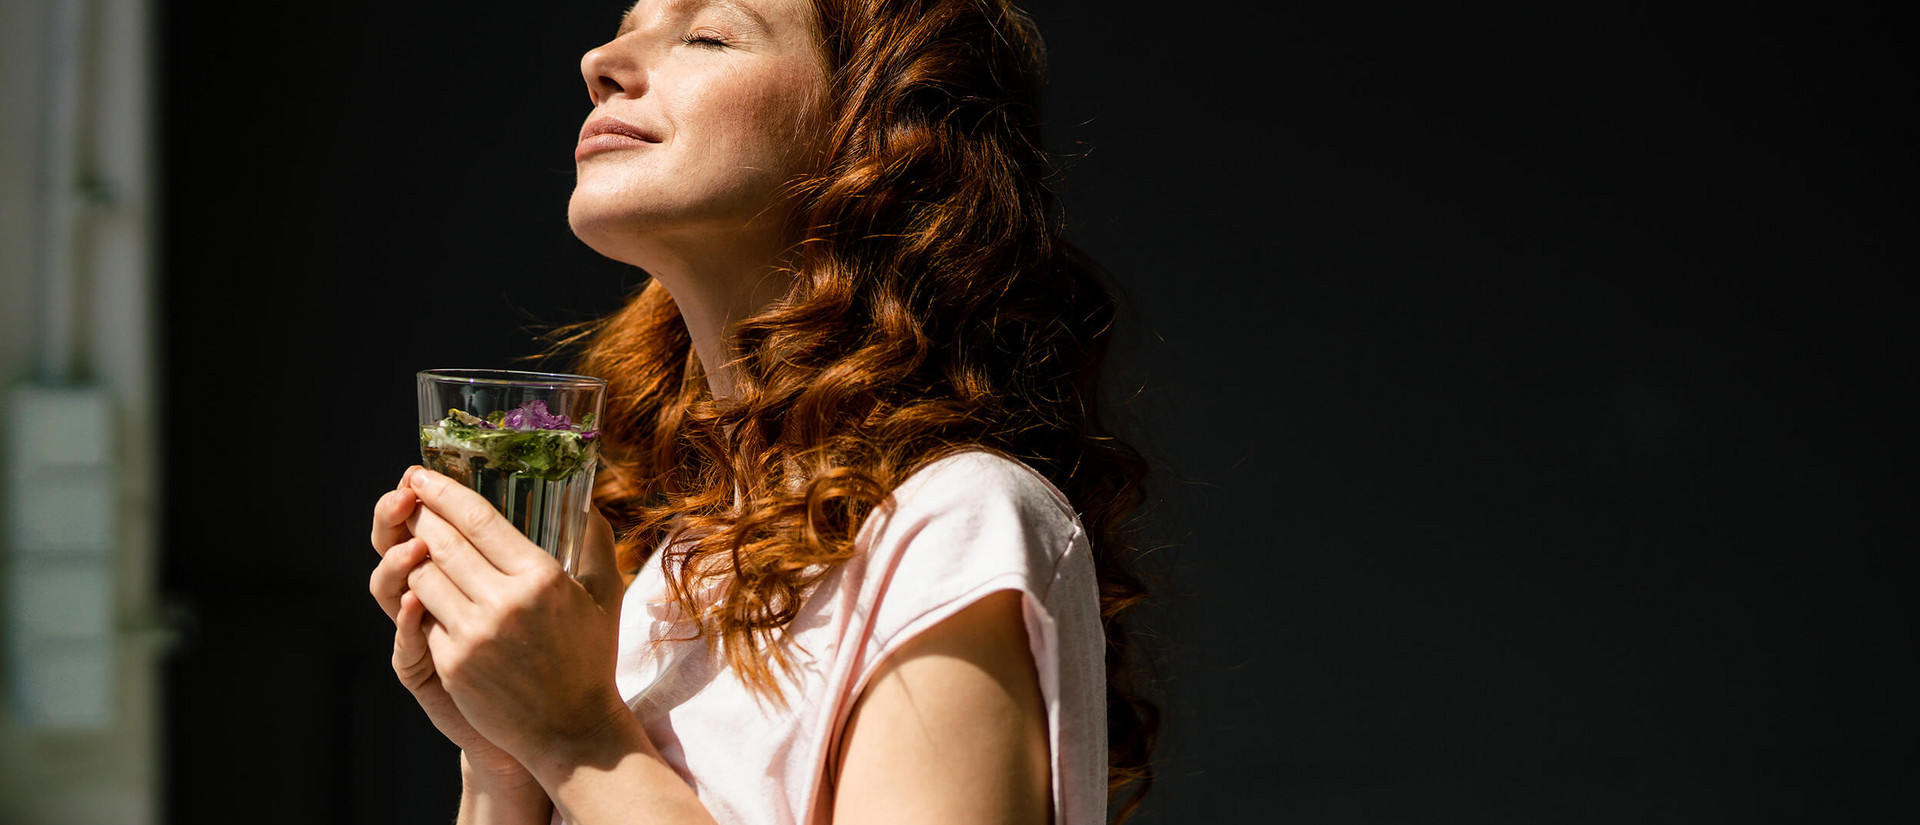 Eine junge, rothaarige Frau steht mit einem Glas Tee vor dem Fenster. Sie streckt ihr Gesicht mit geschlossenen Augen der Sonne entgegen.